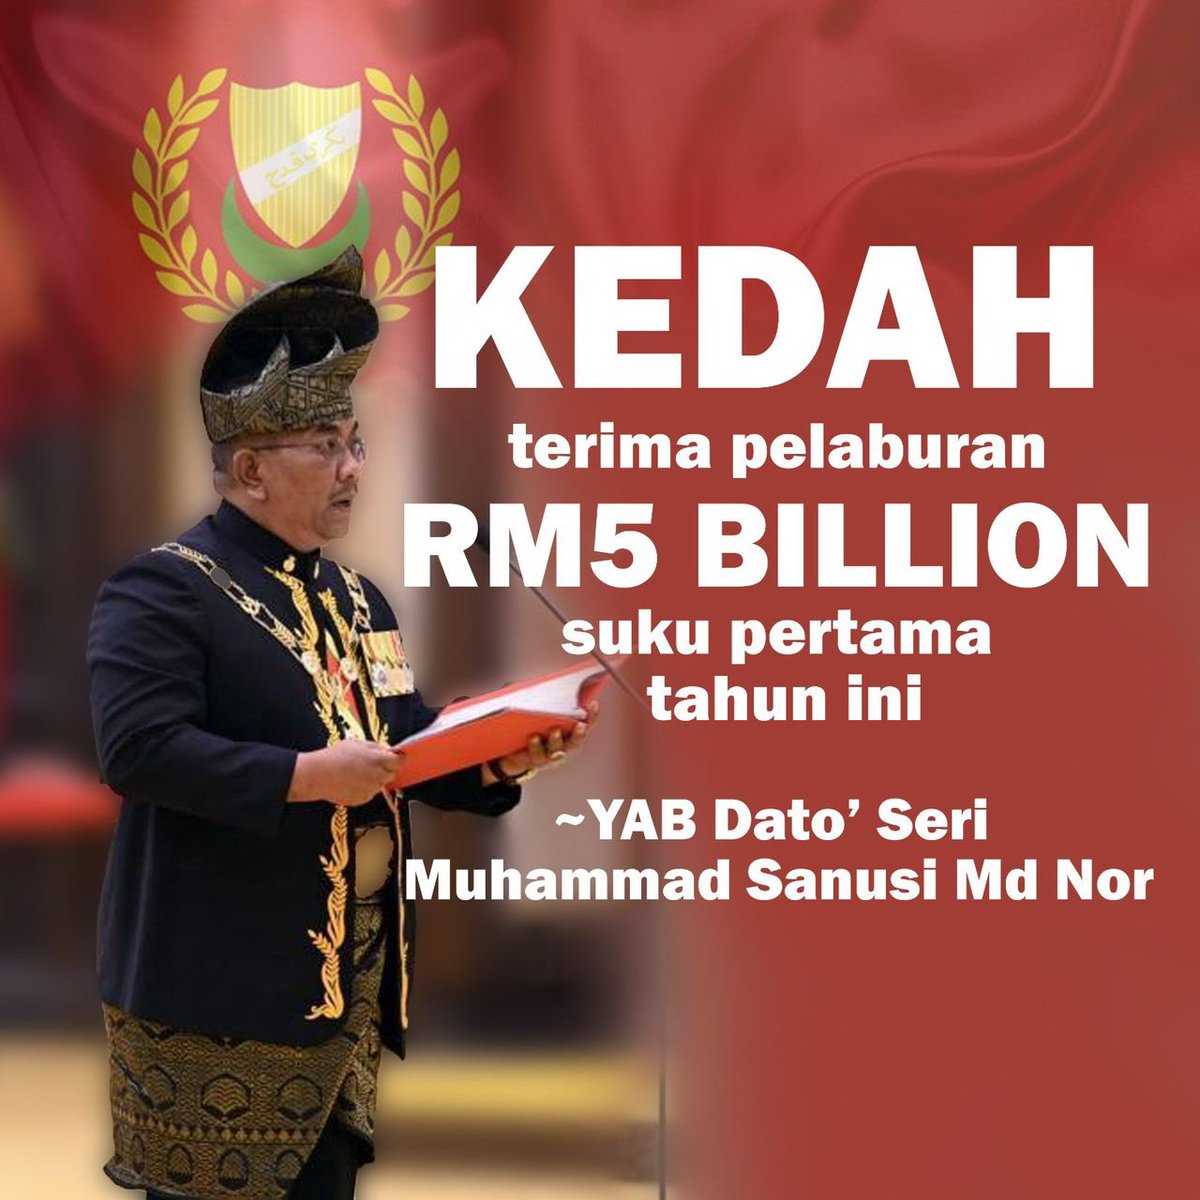 2023 membuktikan The Greater Kedah bukan omongan kosong oleh MB Kedah, ia sedang dilaksanakan dengan jayanya InsyaAllah